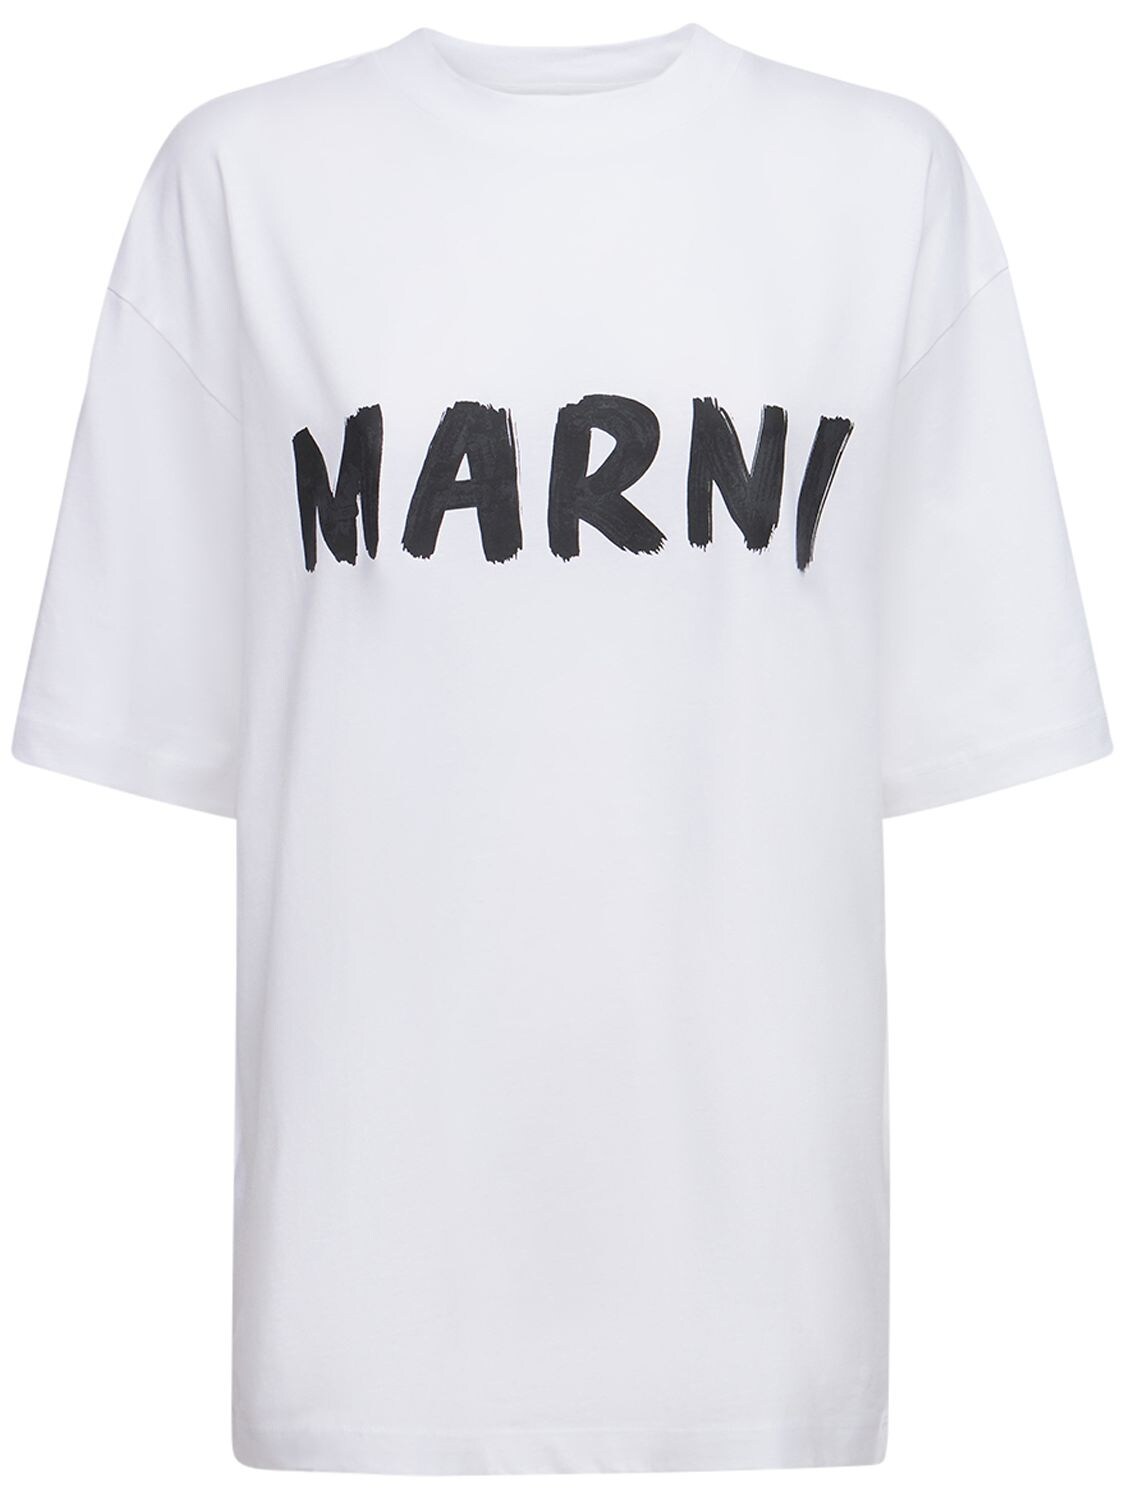 Marni - Oversize logo cotton jersey t-shirt - White/Black | Luisaviaroma